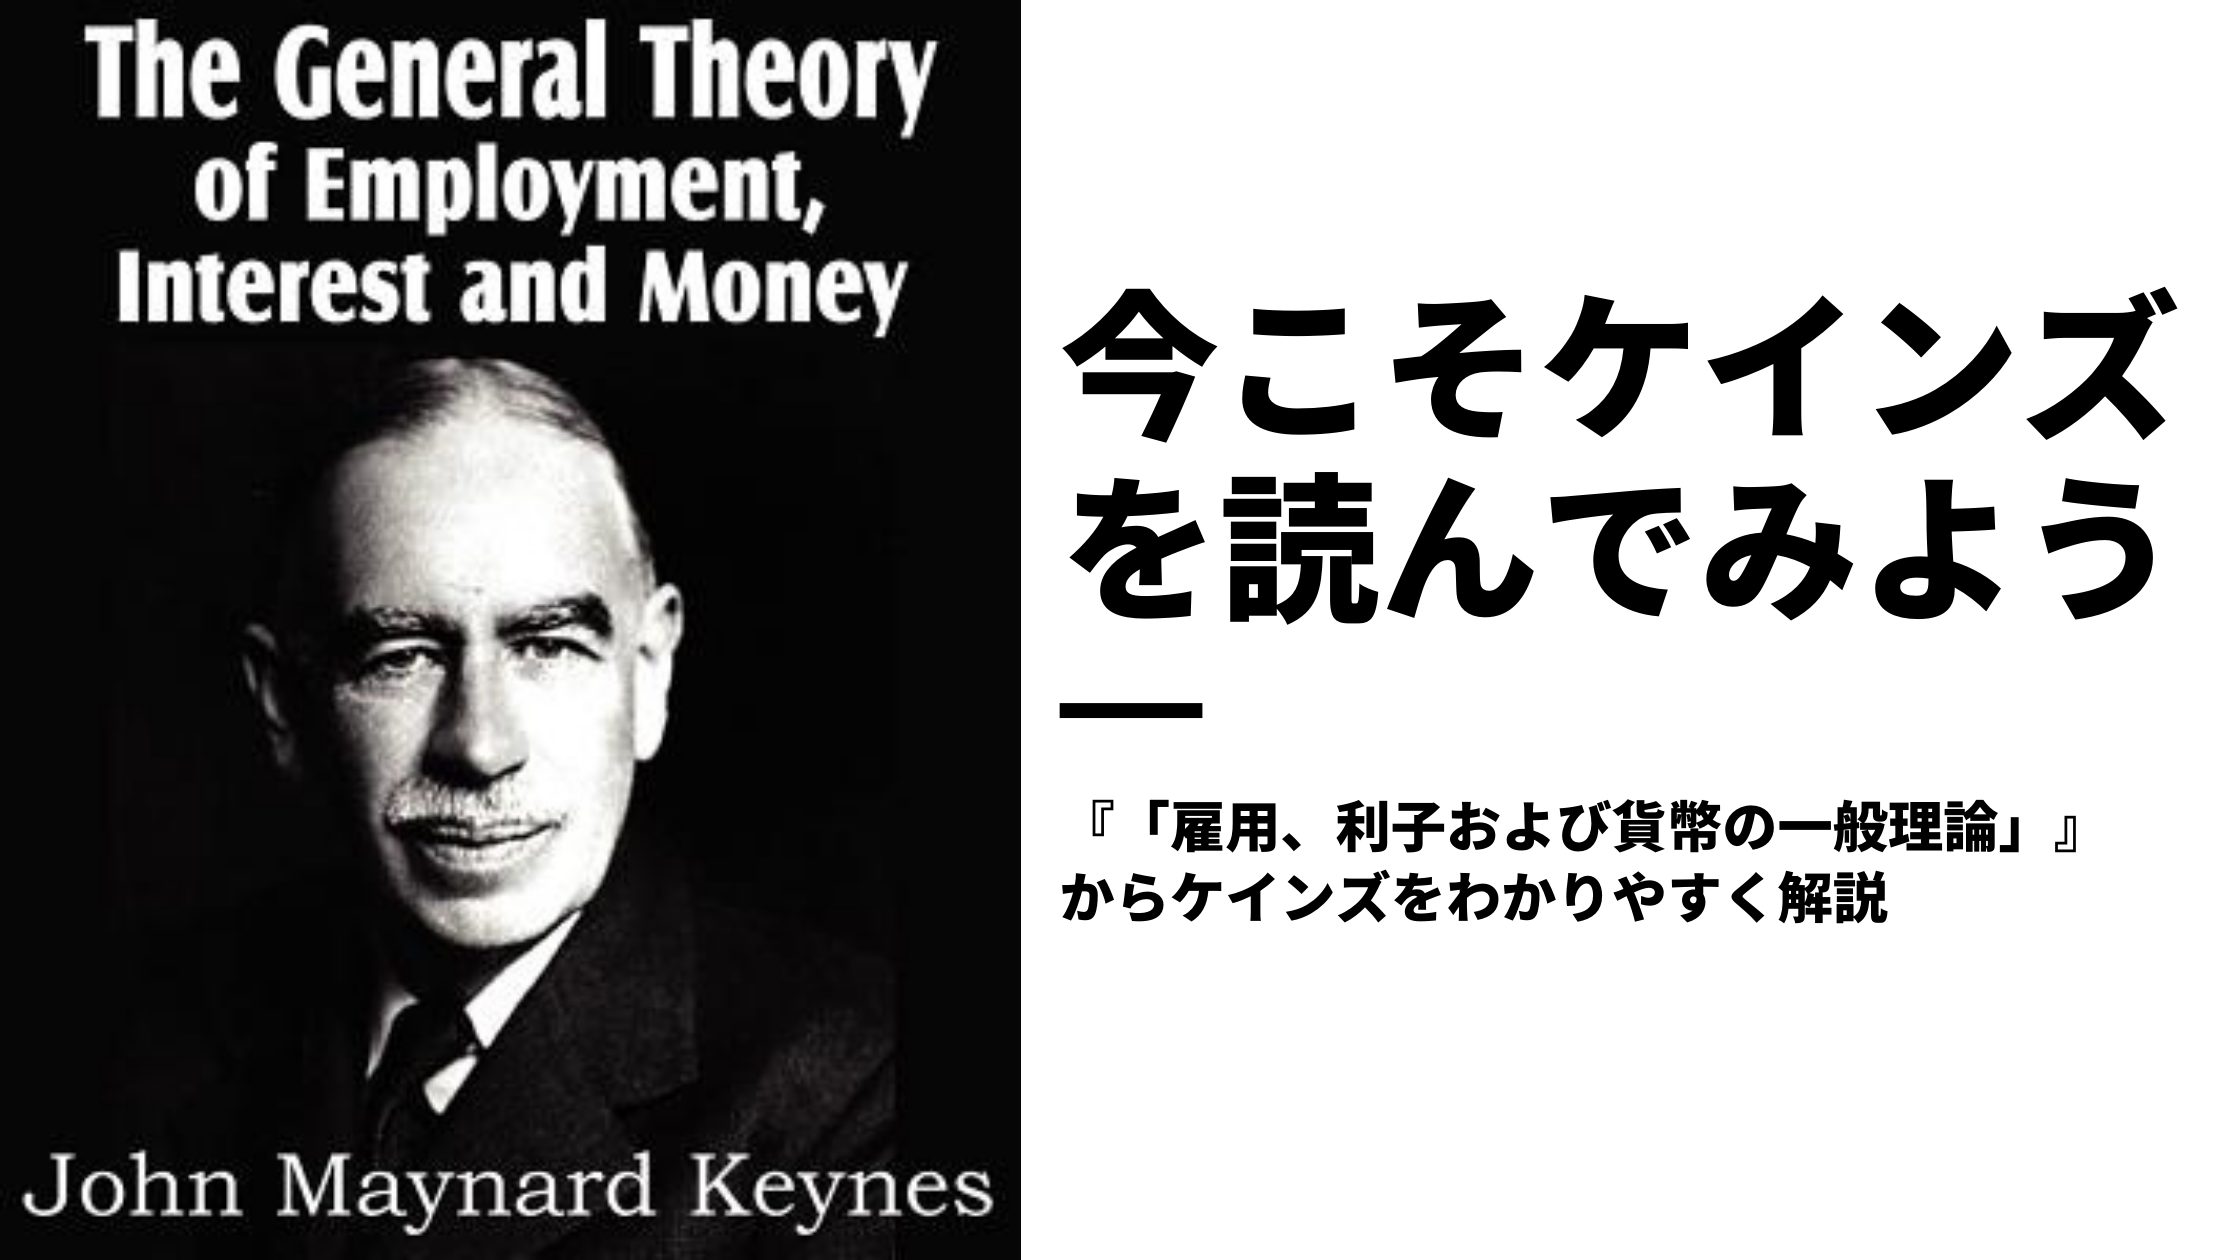 ケインズ 雇用 利子および貨幣の一般理論 をわかりやすくレビューする そのぶっ飛び人生と難解な理論を解説